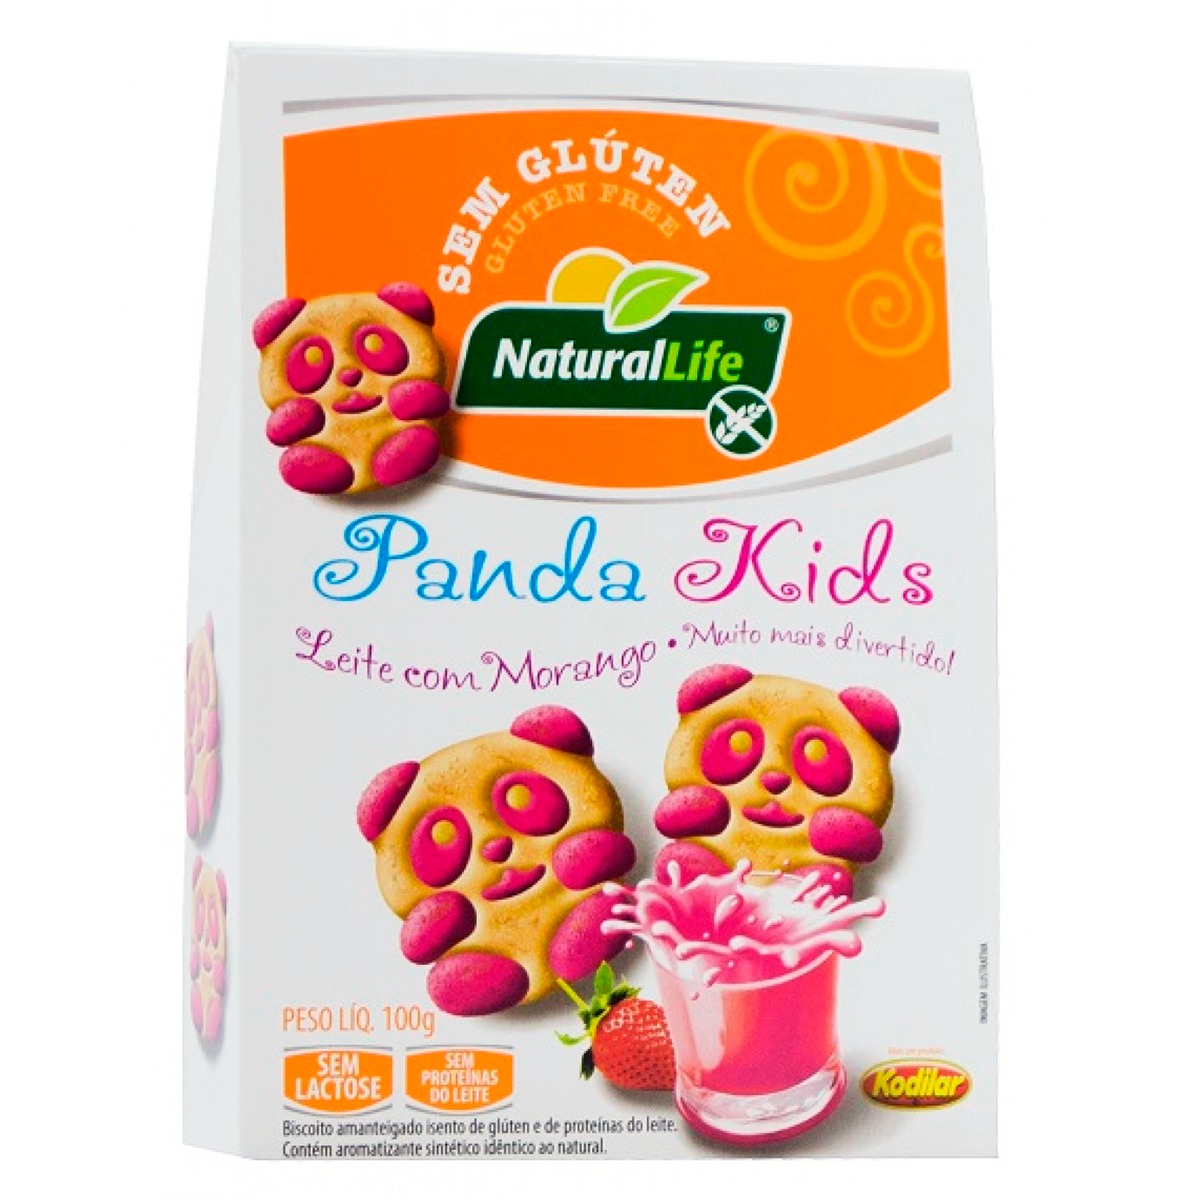 Biscoito Amanteigado Panda Kids Leite com Morango Sem Glúten e Lactose Natural Life Kodilar Caixa 100g